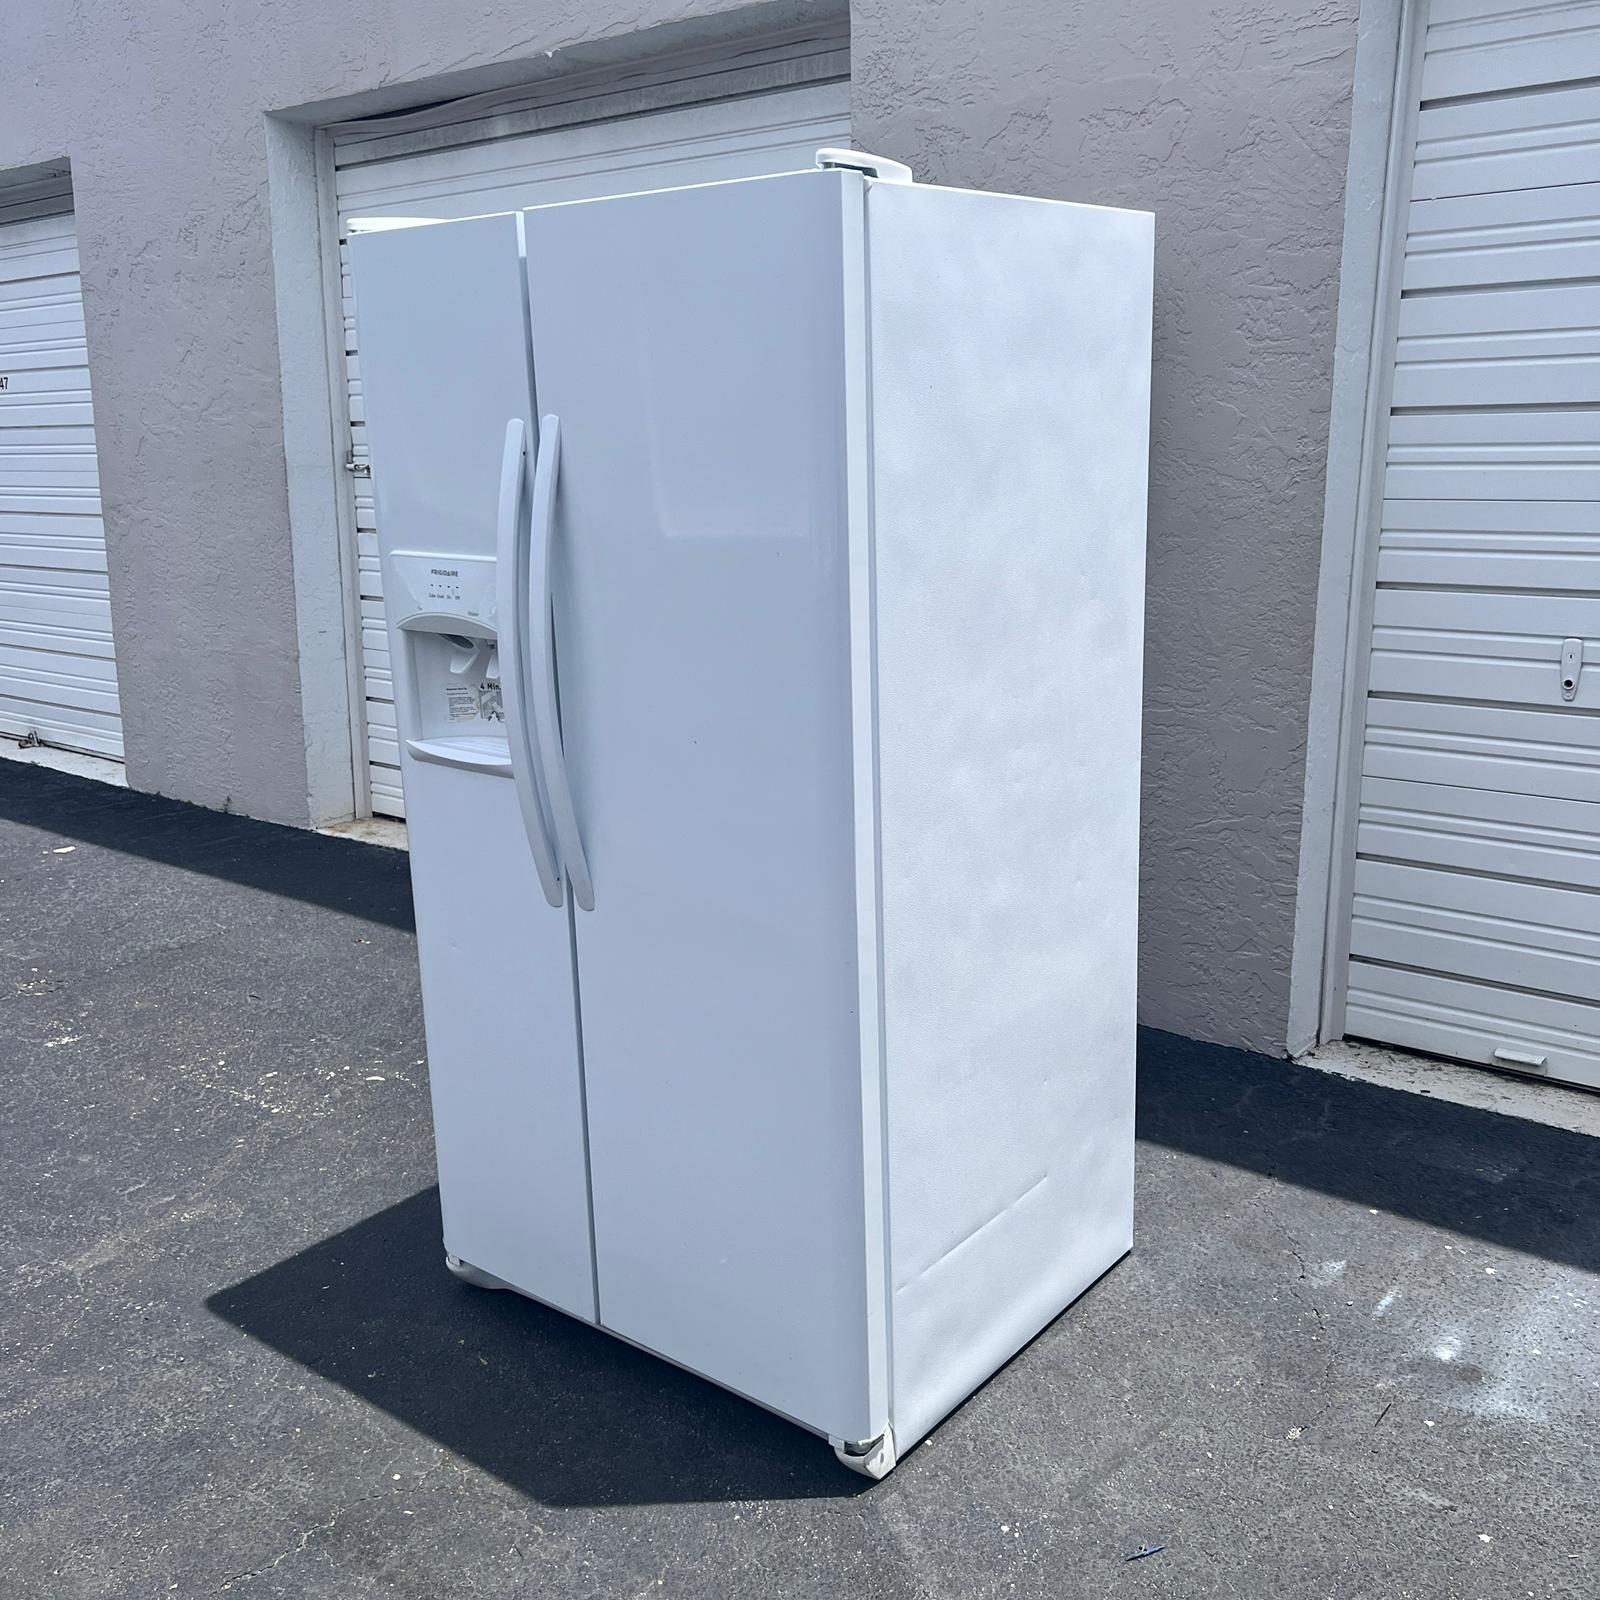 Frigidaire Side by Side Refrigerator